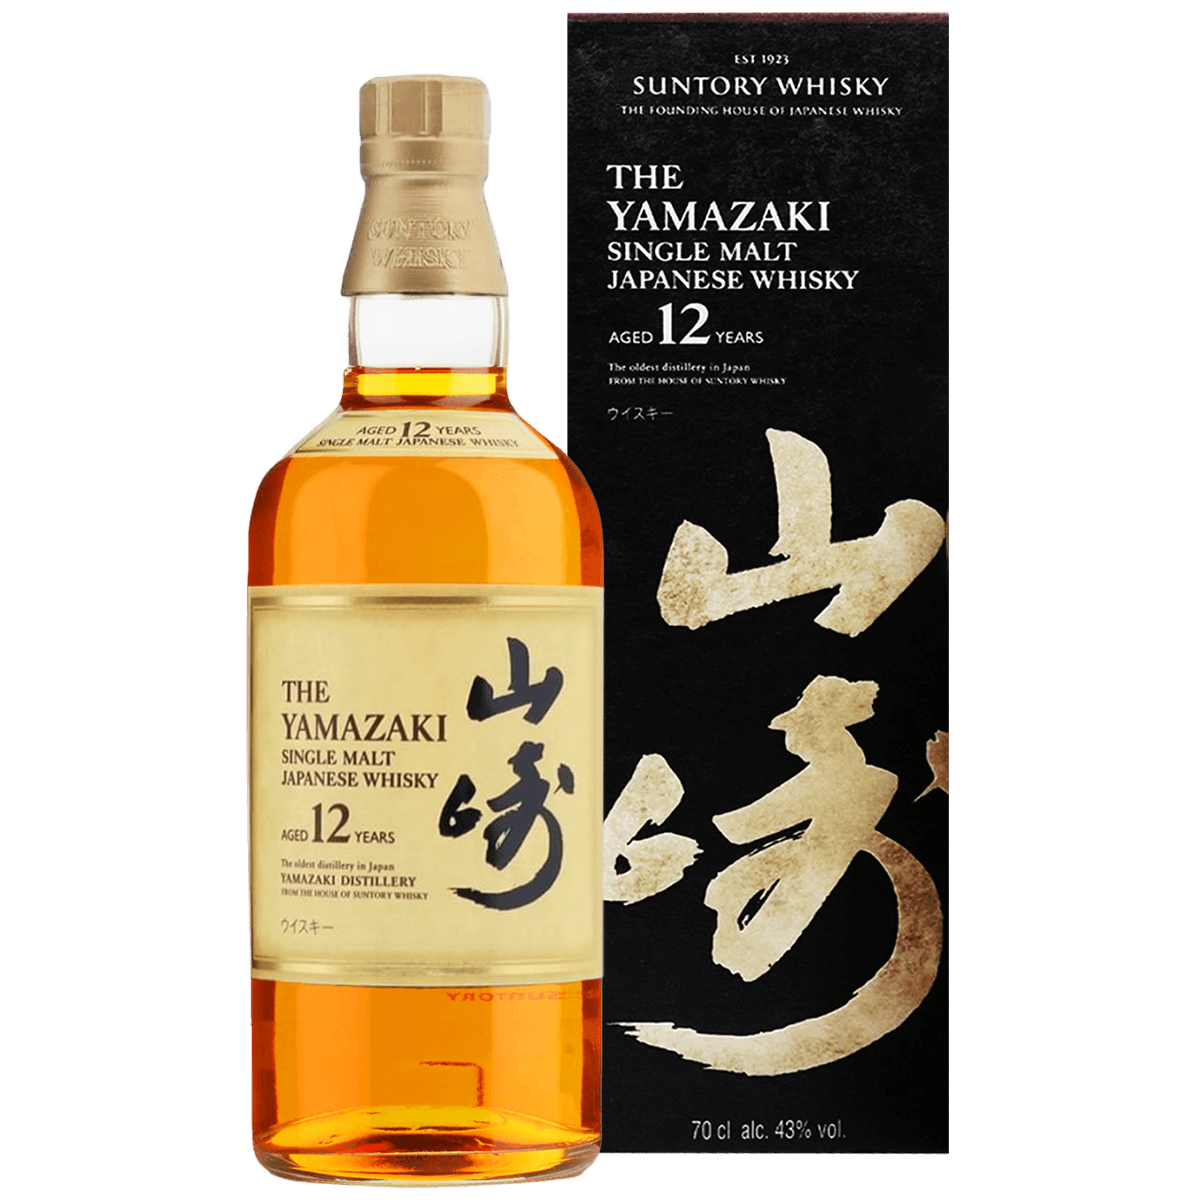 The Yamazaki (山崎)Single Malt Japanese Whisky